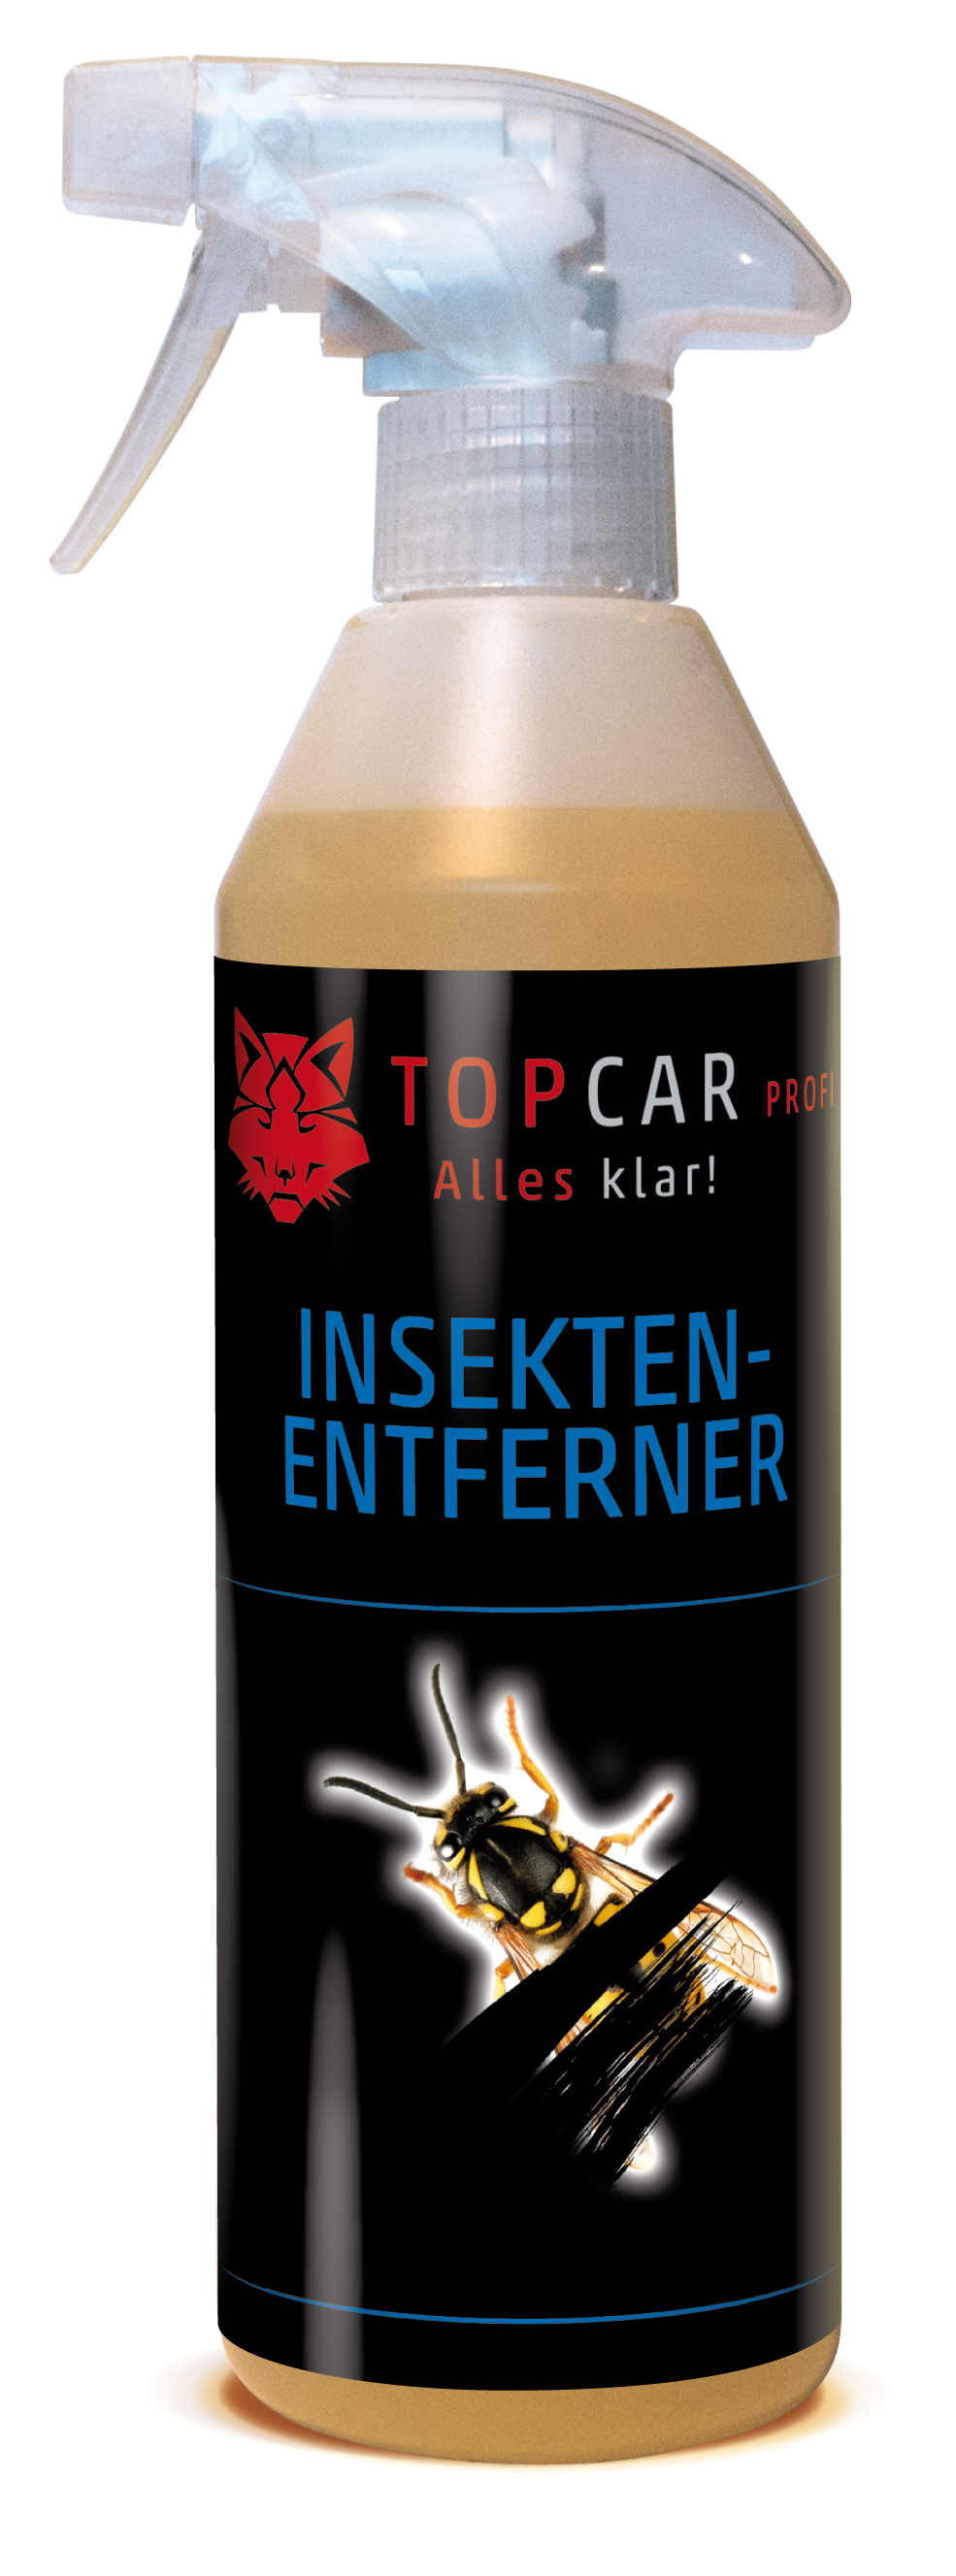 TOP CAR Insektenentferner 500ml Sprühflasche - Weigola Hygienevertrieb -  - Weigola Hygienevertrieb